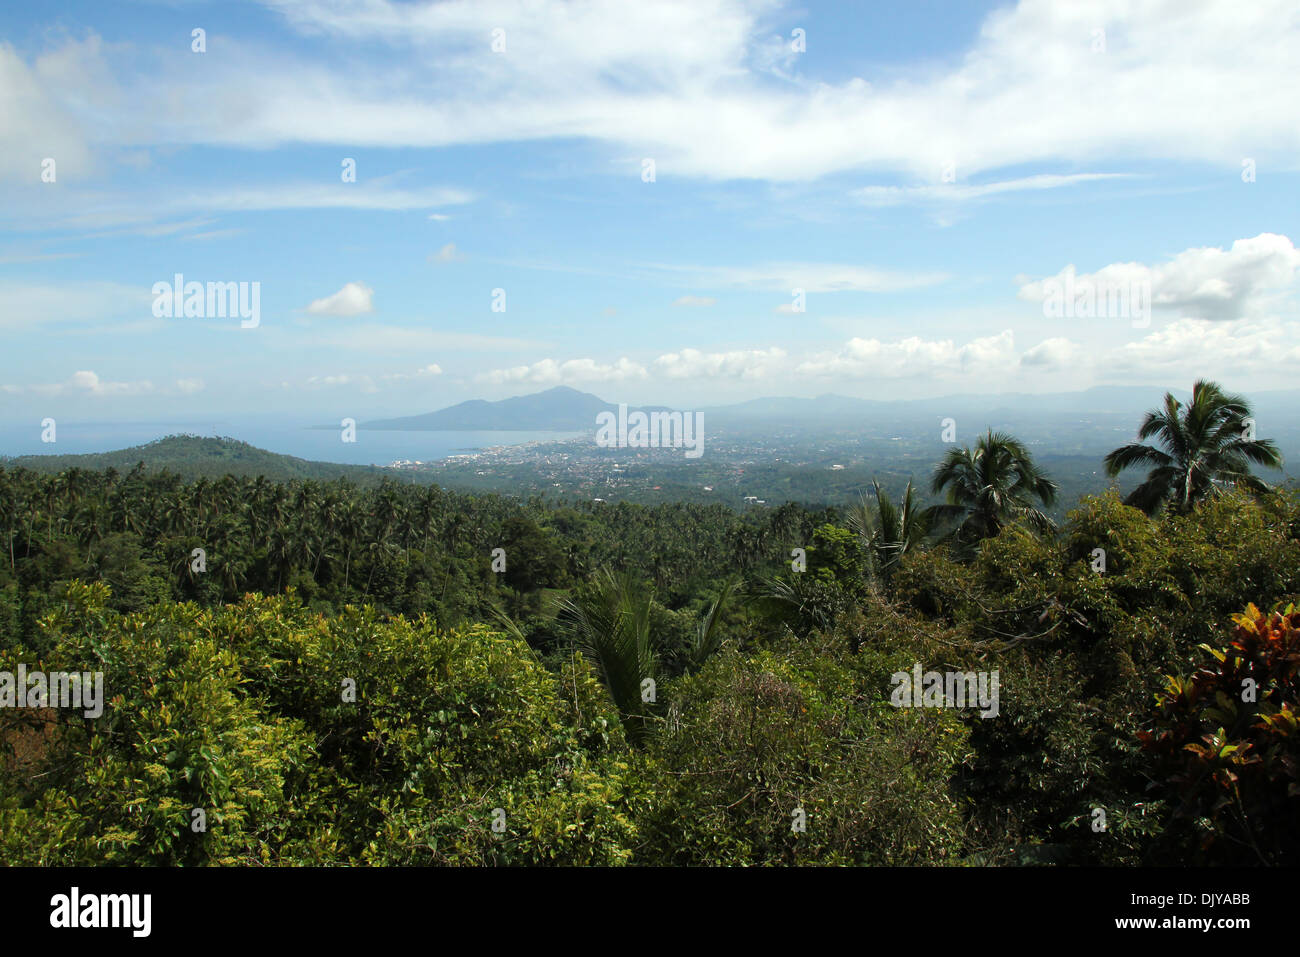 Vista de la ciudad de Manado, Sulawesi, Indonesia Foto de stock